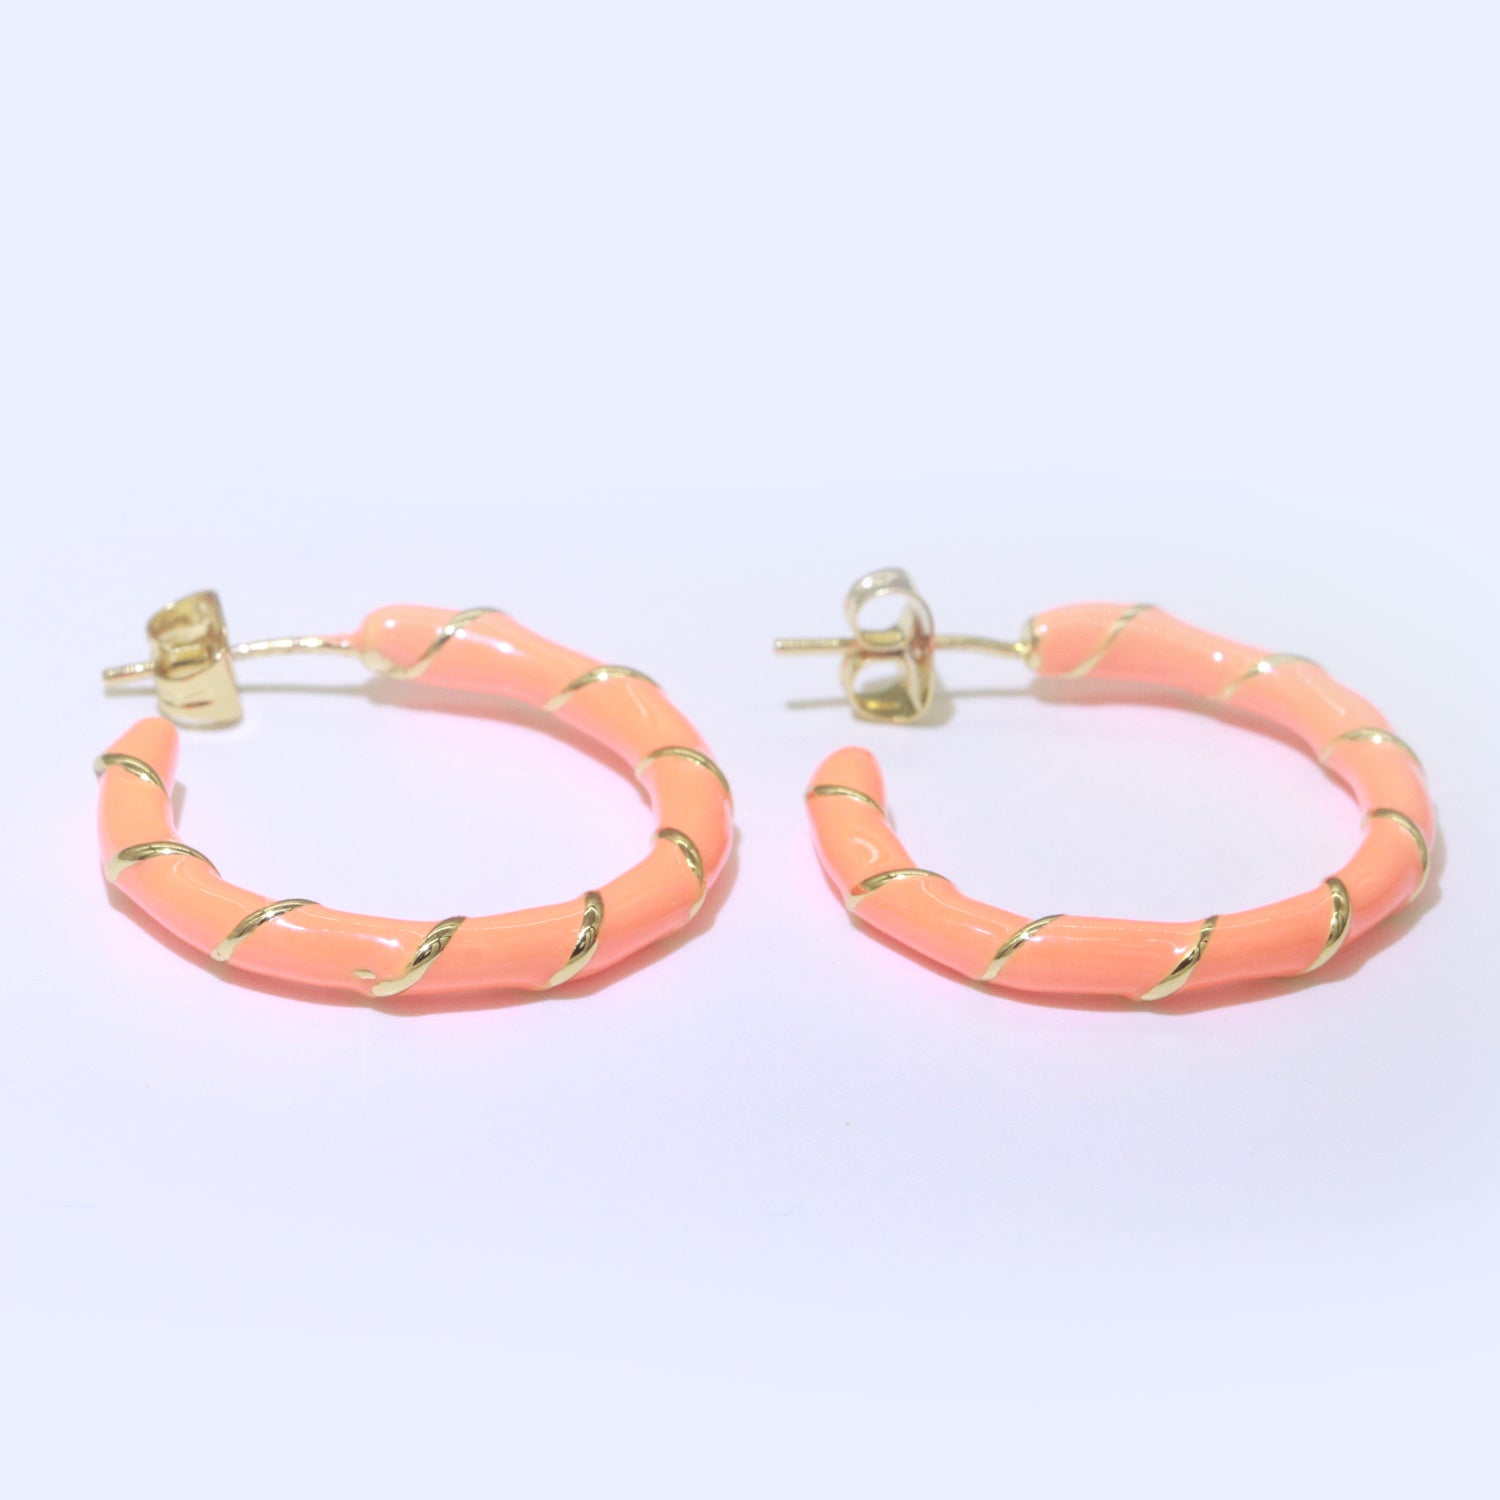 Orange Enamel Hoop Earring with Gold Swirl 26mm Hoop earring Jewelry Gift - DLUXCA